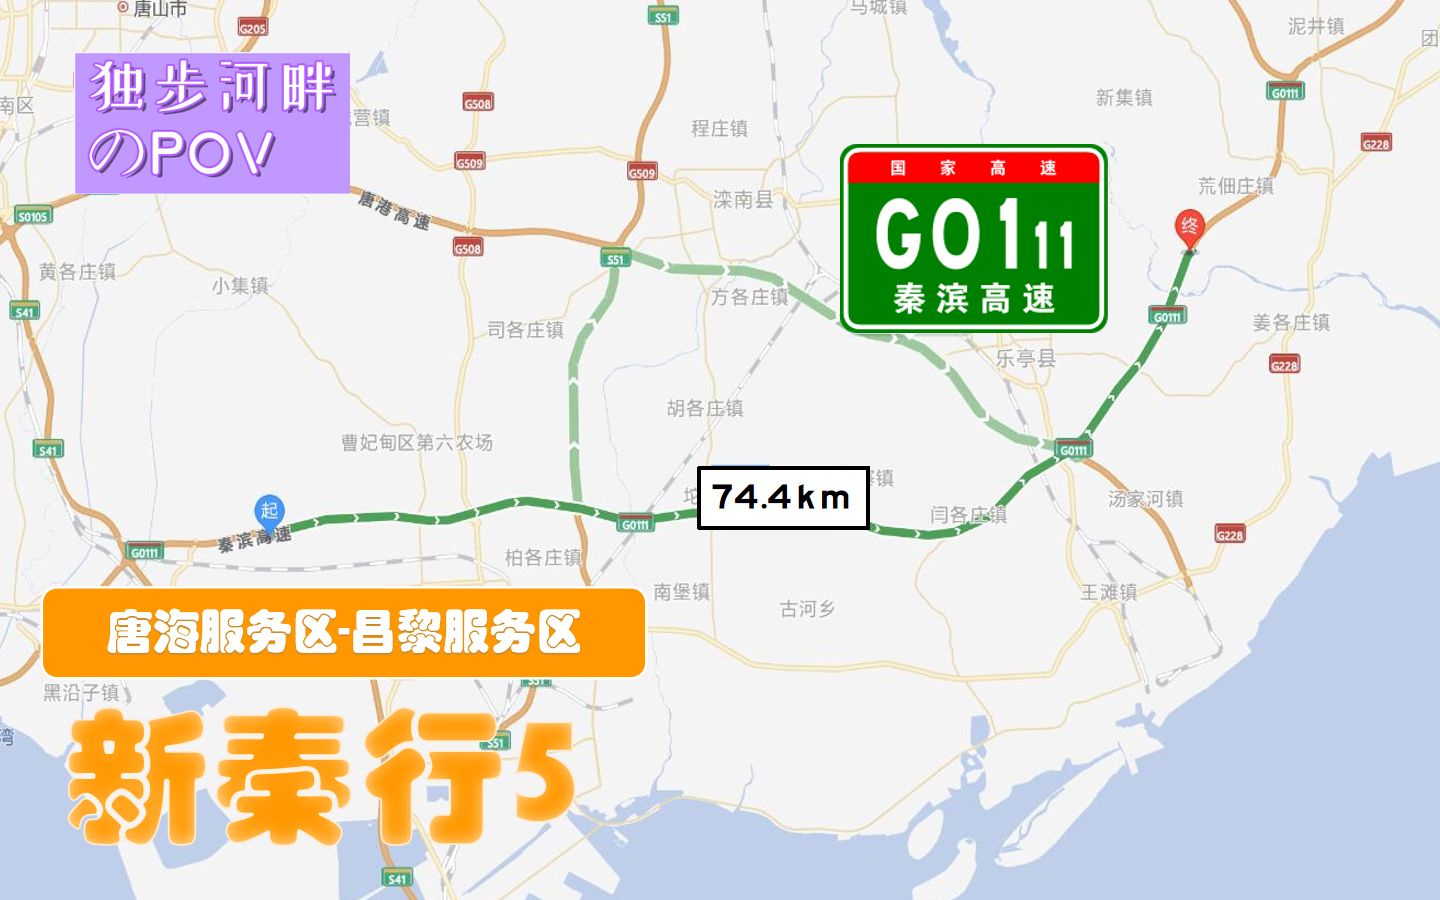 秦滨高速地图图片